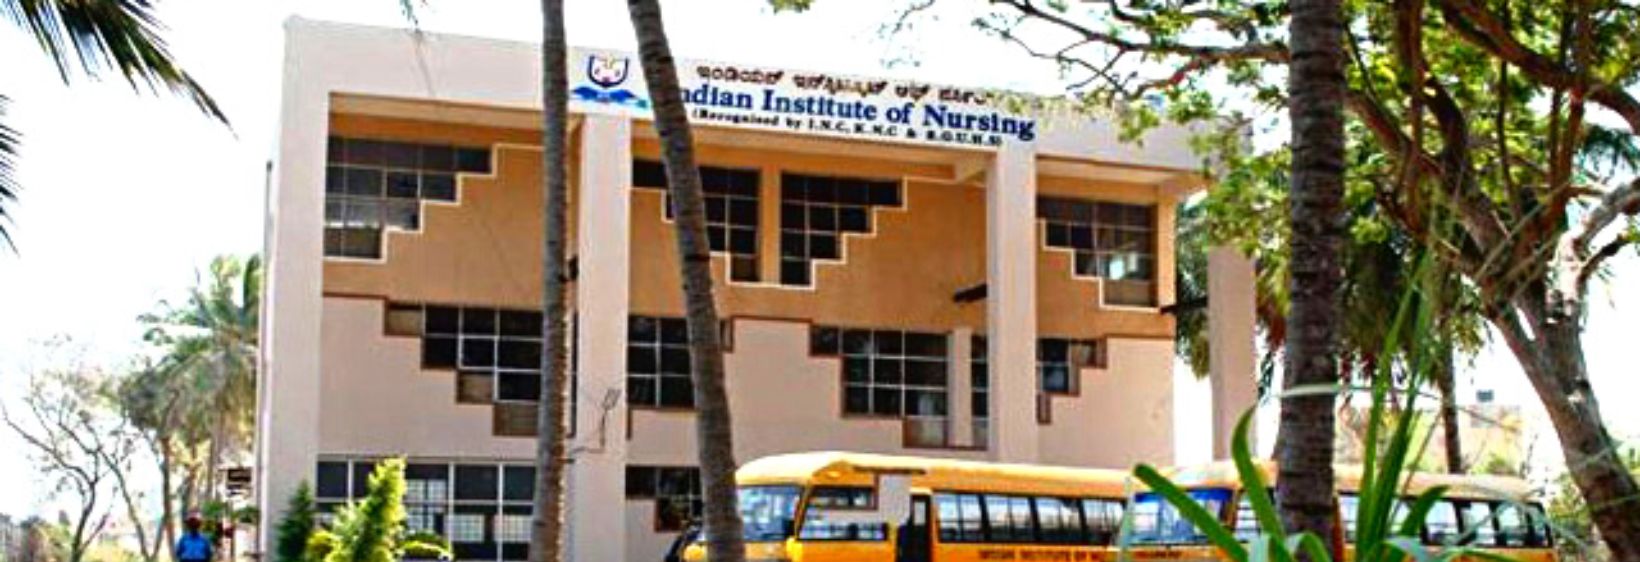 Indian Institute of Nursing - Bangalore